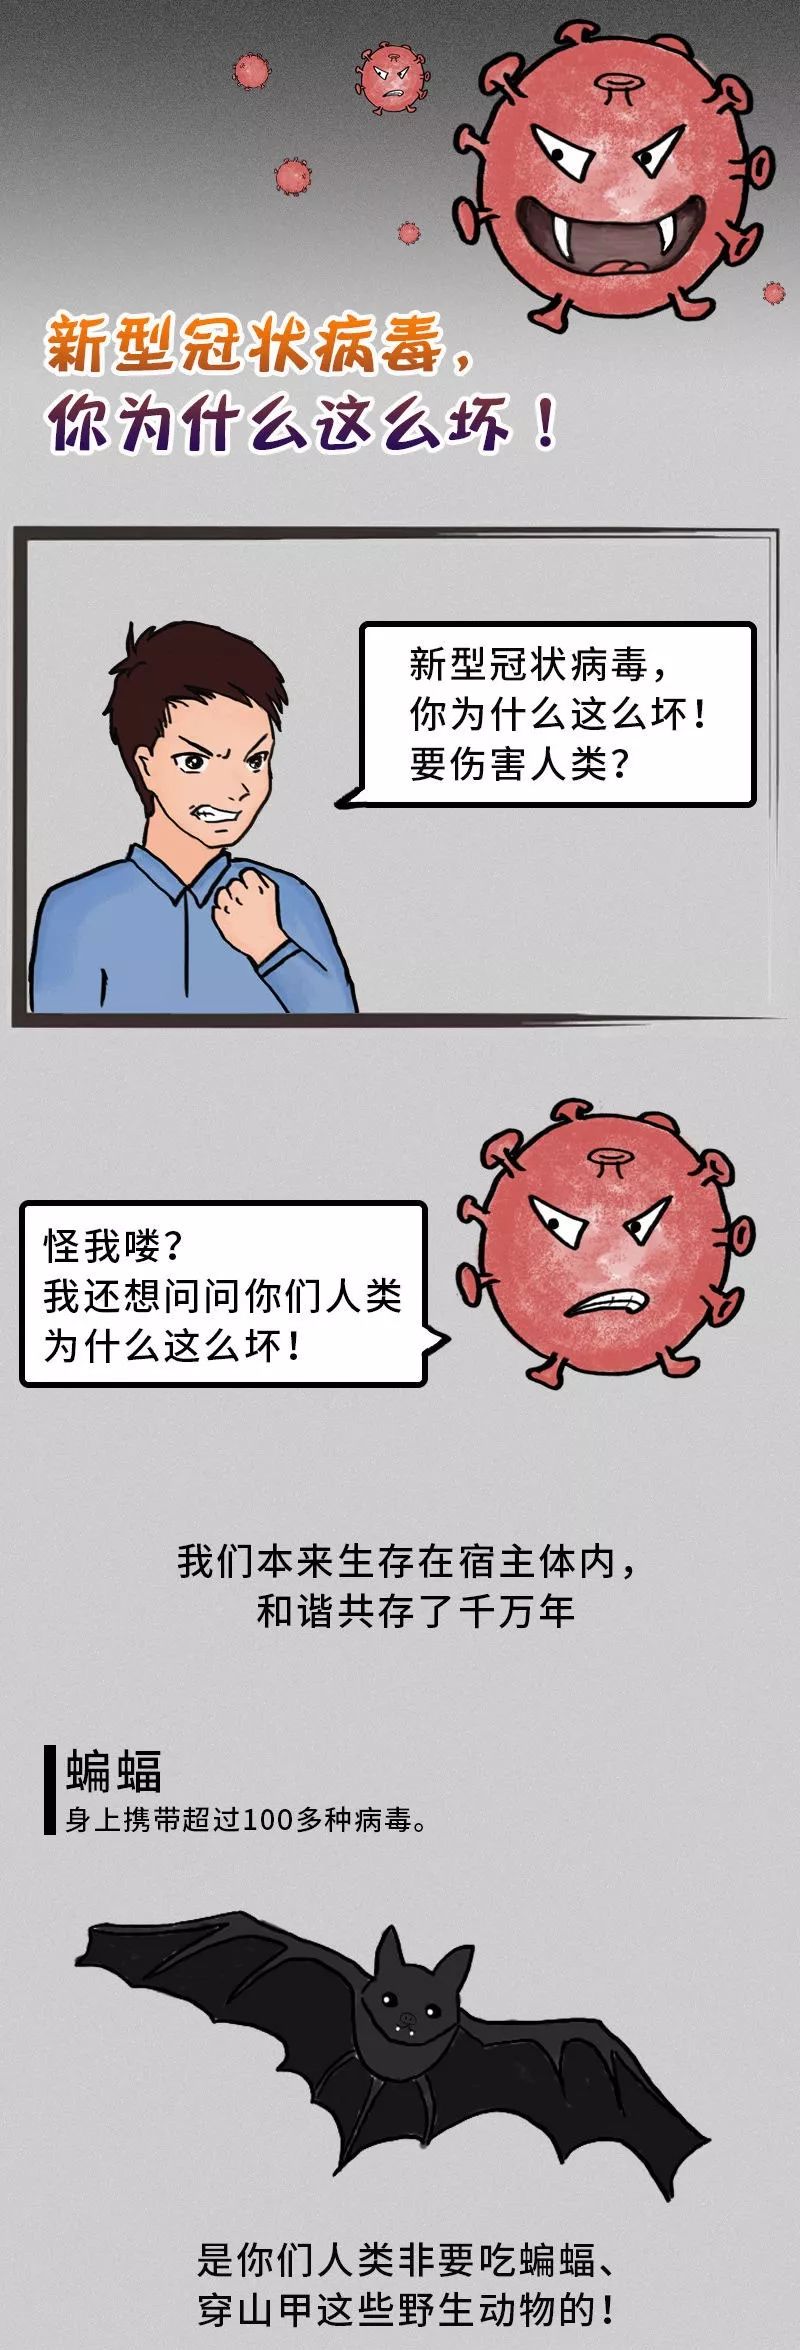 漫画图解告诉你:新型冠状病毒为什么这么坏!